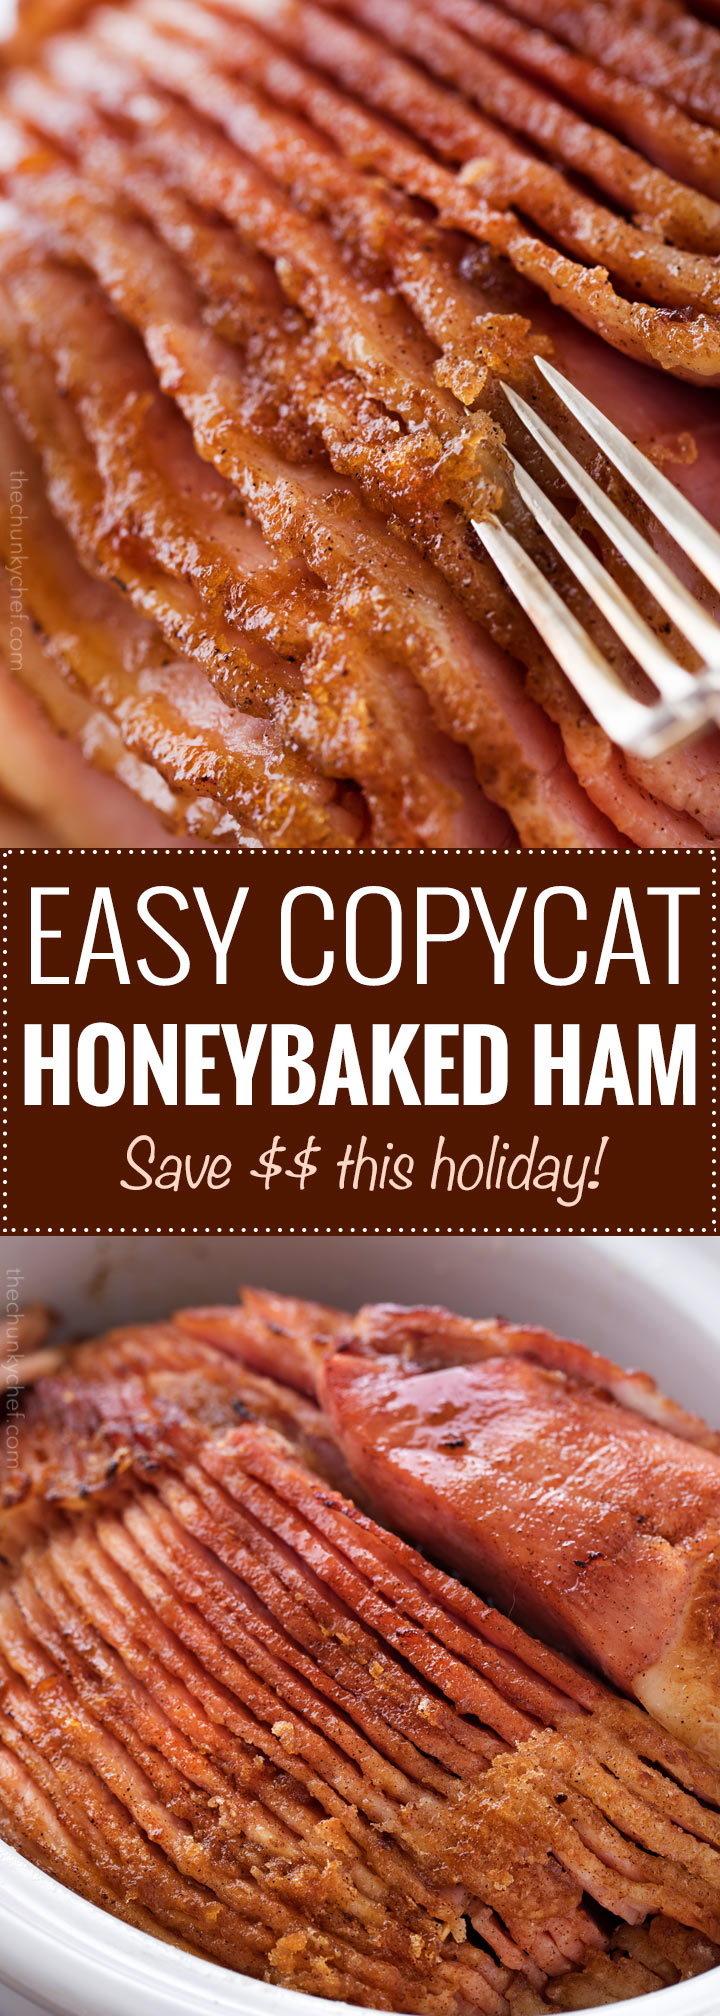 Honey Baked Ham Turkey Salad Recipe | Besto Blog